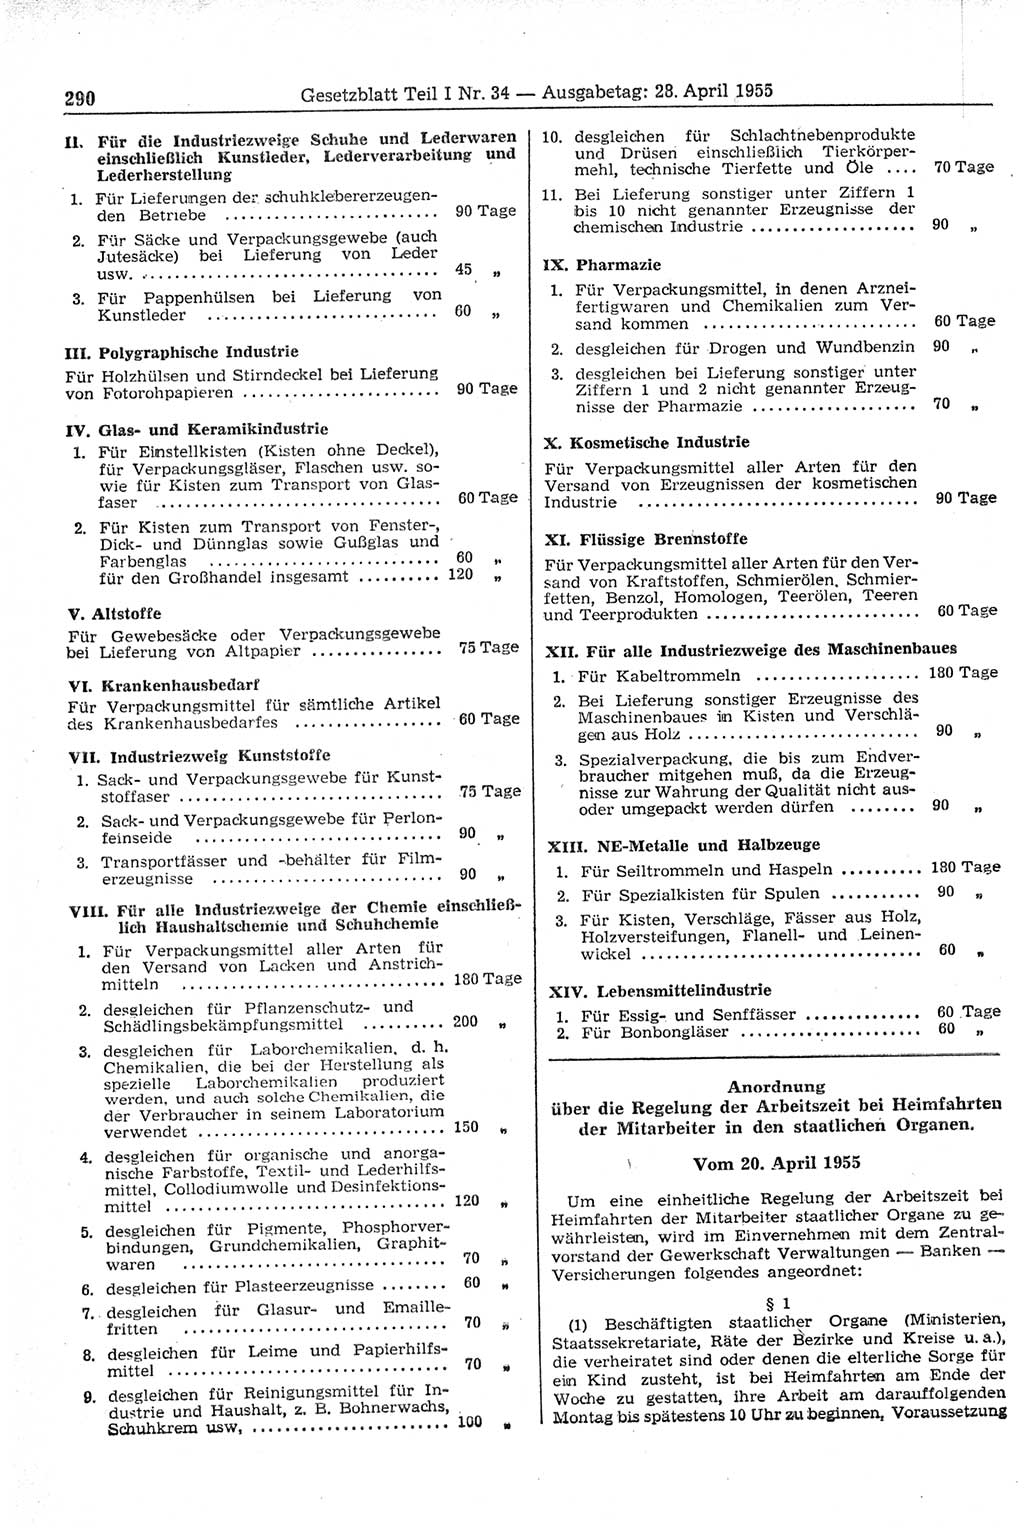 Gesetzblatt (GBl.) der Deutschen Demokratischen Republik (DDR) Teil Ⅰ 1955, Seite 290 (GBl. DDR Ⅰ 1955, S. 290)